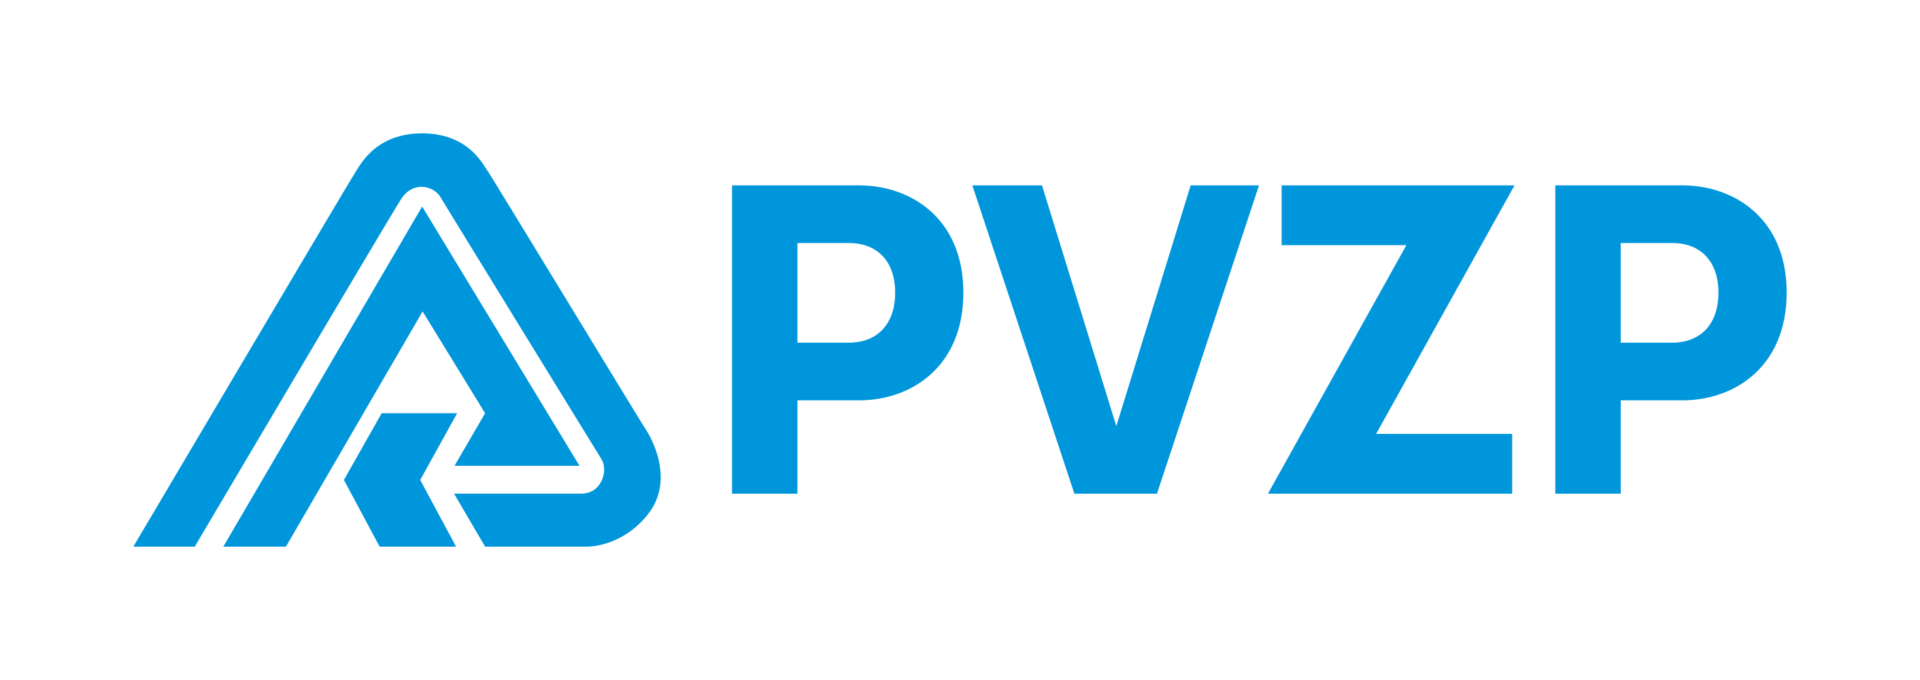 PVZP_logo_RGB